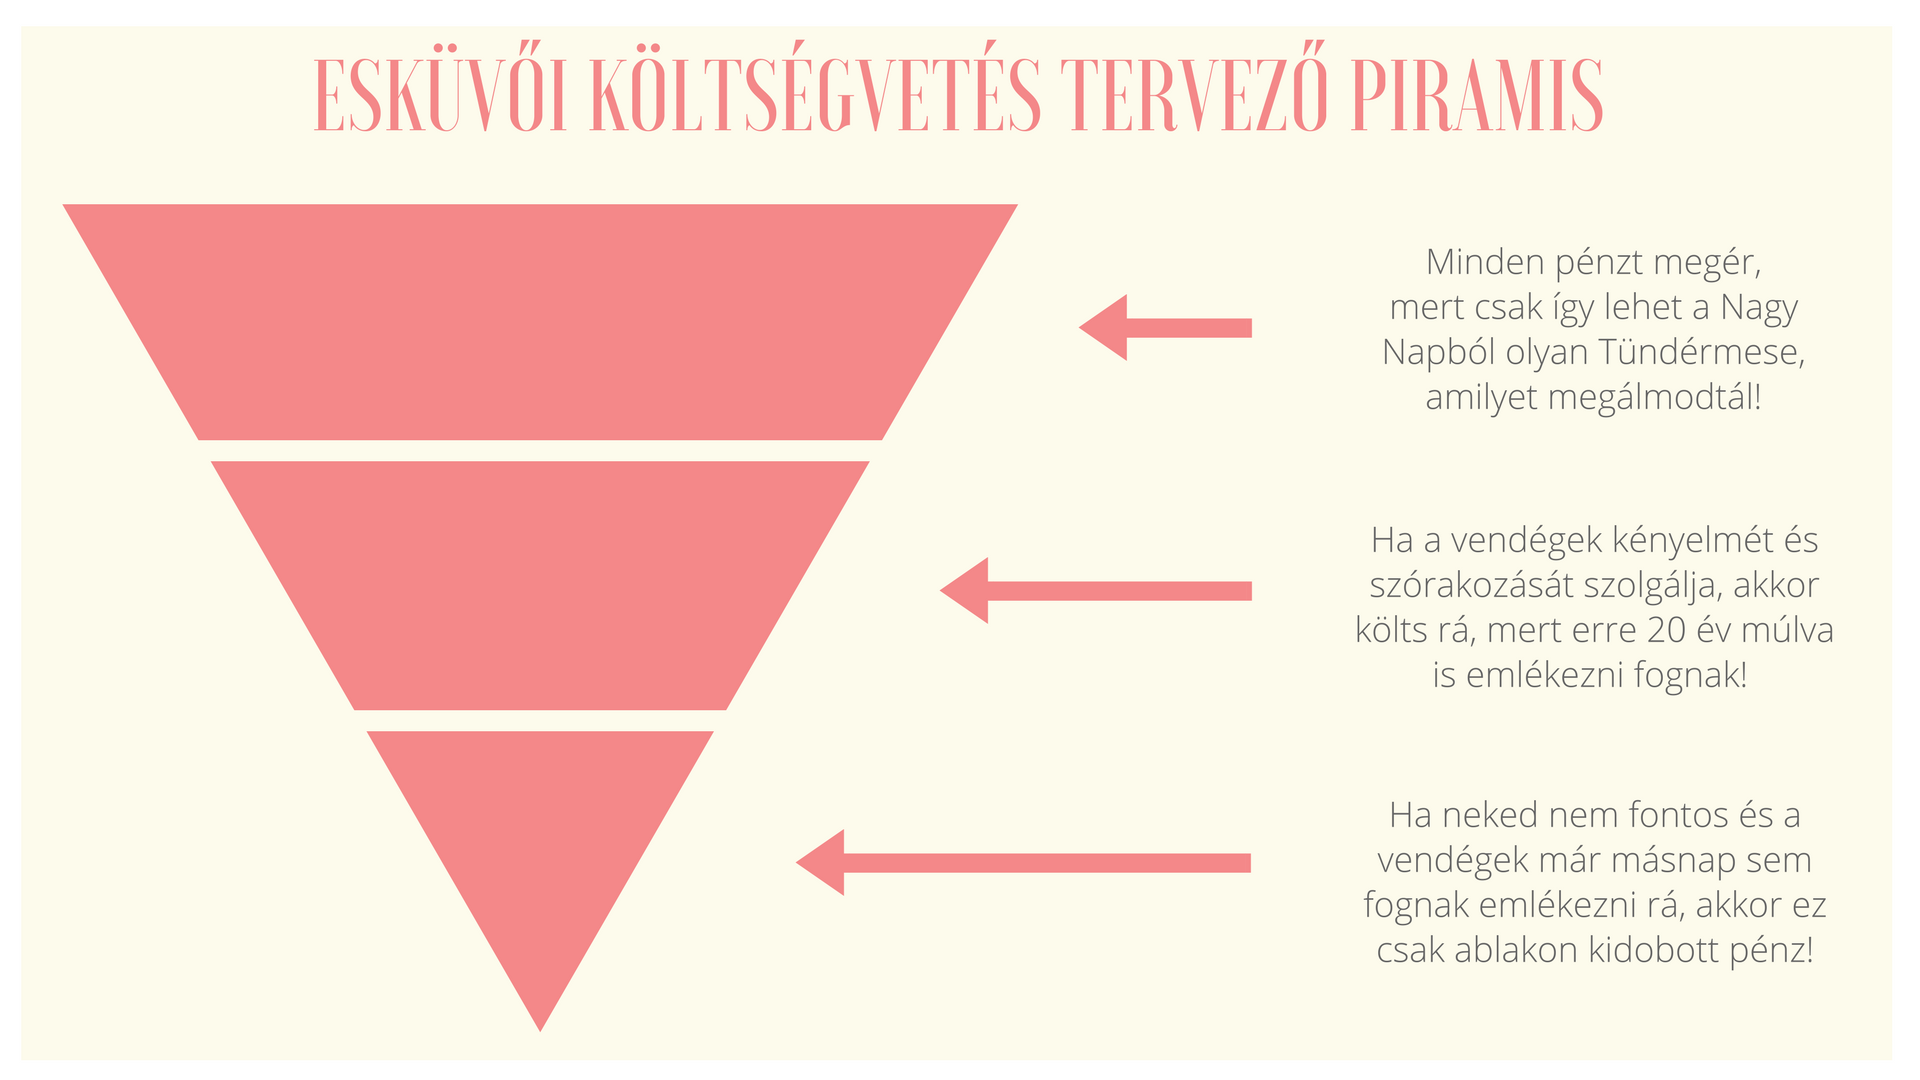 eskuvoi_koltsegvetes_tervezo_piramis_1.png